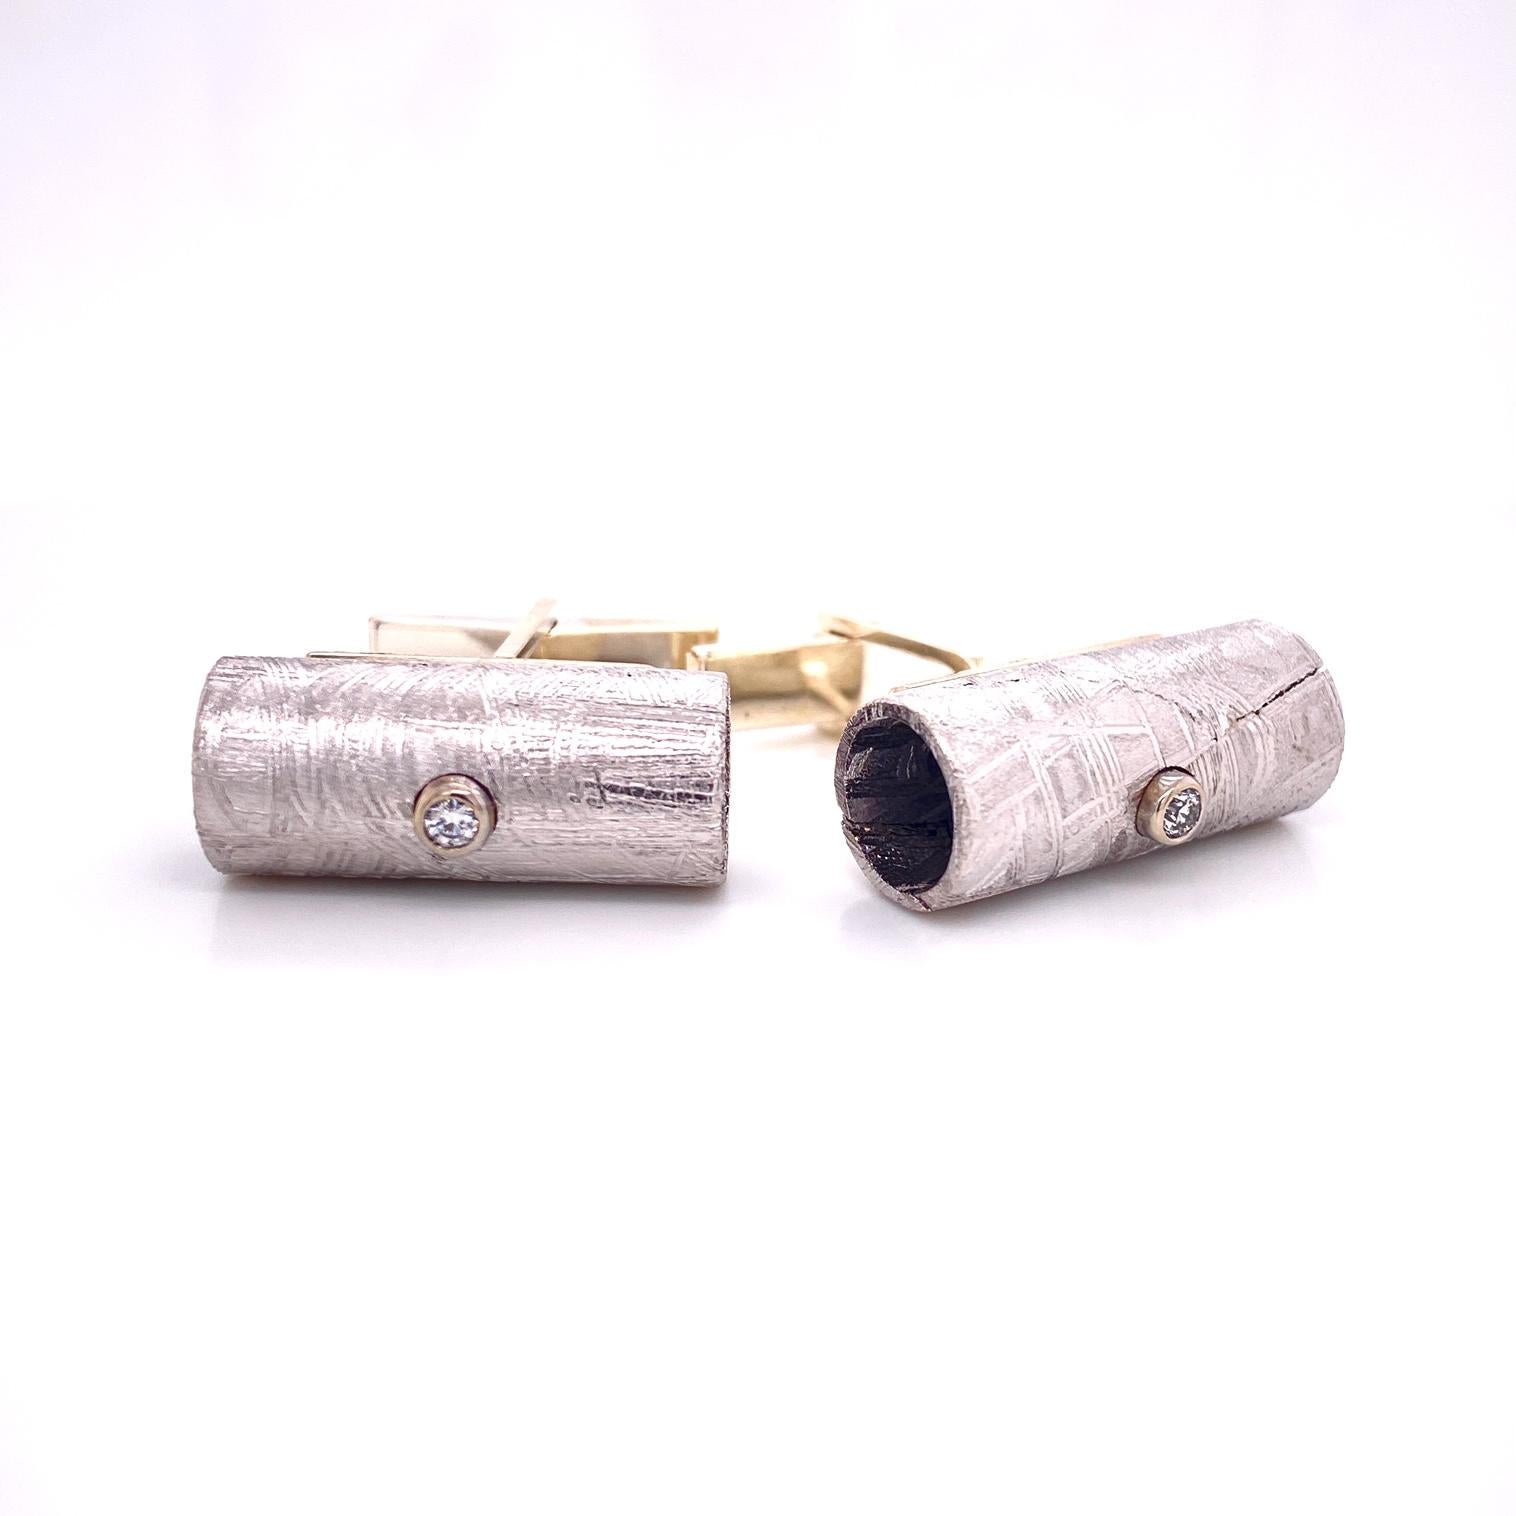 Une paire de boutons de manchette en forme de tube de météorite en argent sterling et or blanc 18 carats, sertis de 0,12 carats de diamants blancs. Ces boutons de manchette ont été réalisés et conçus par llyn strong.